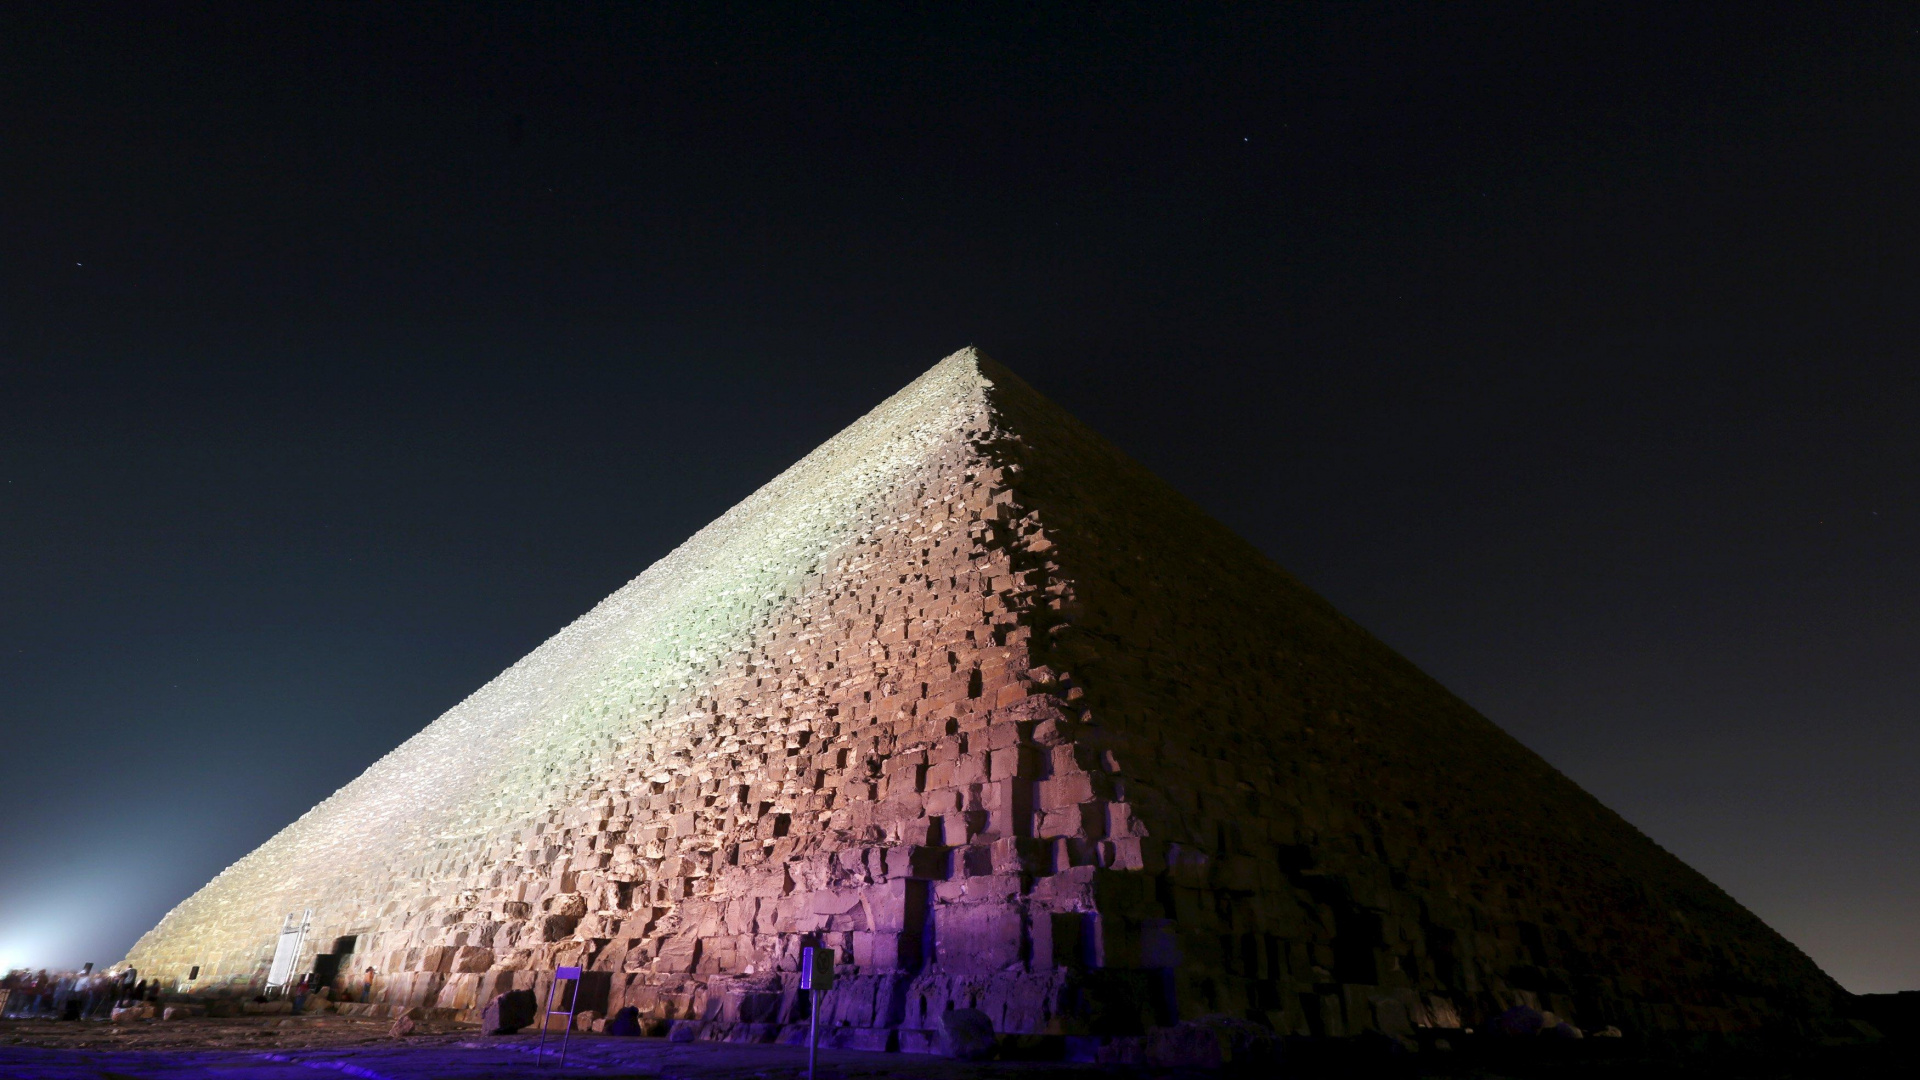 金字塔, 埃及金字塔, 里程碑, 纪念碑, 三角形 壁纸 1920x1080 允许